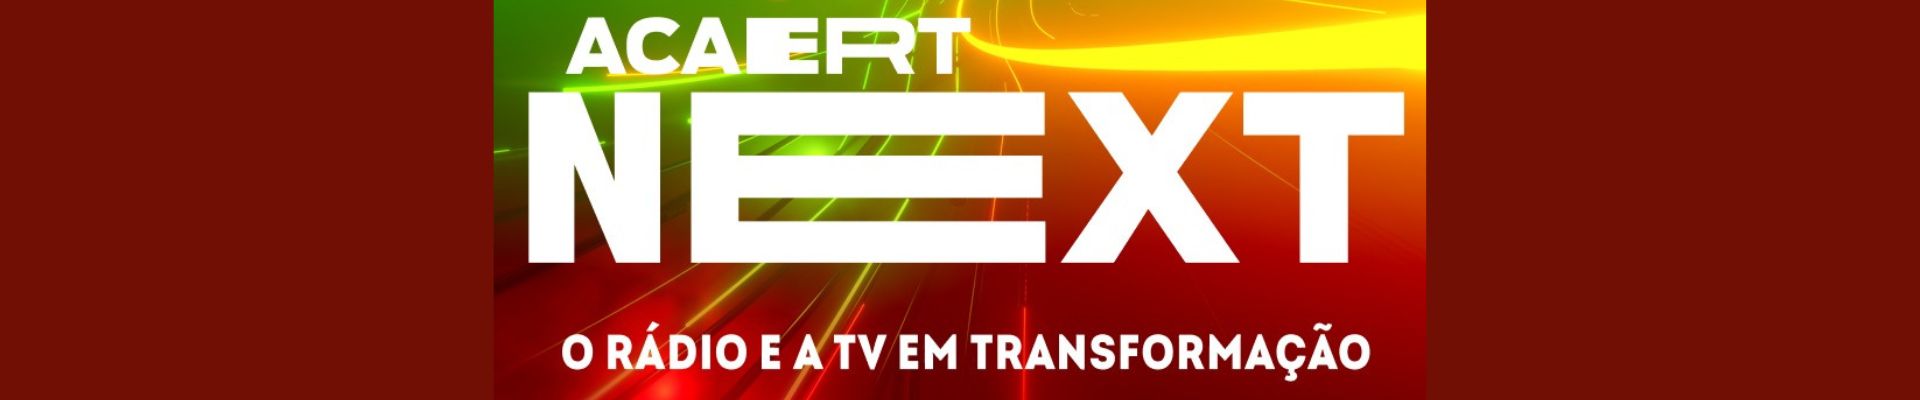 ACAERT promove 19º Congresso Catarinense de Rádio e Televisão/ ACAERT Next